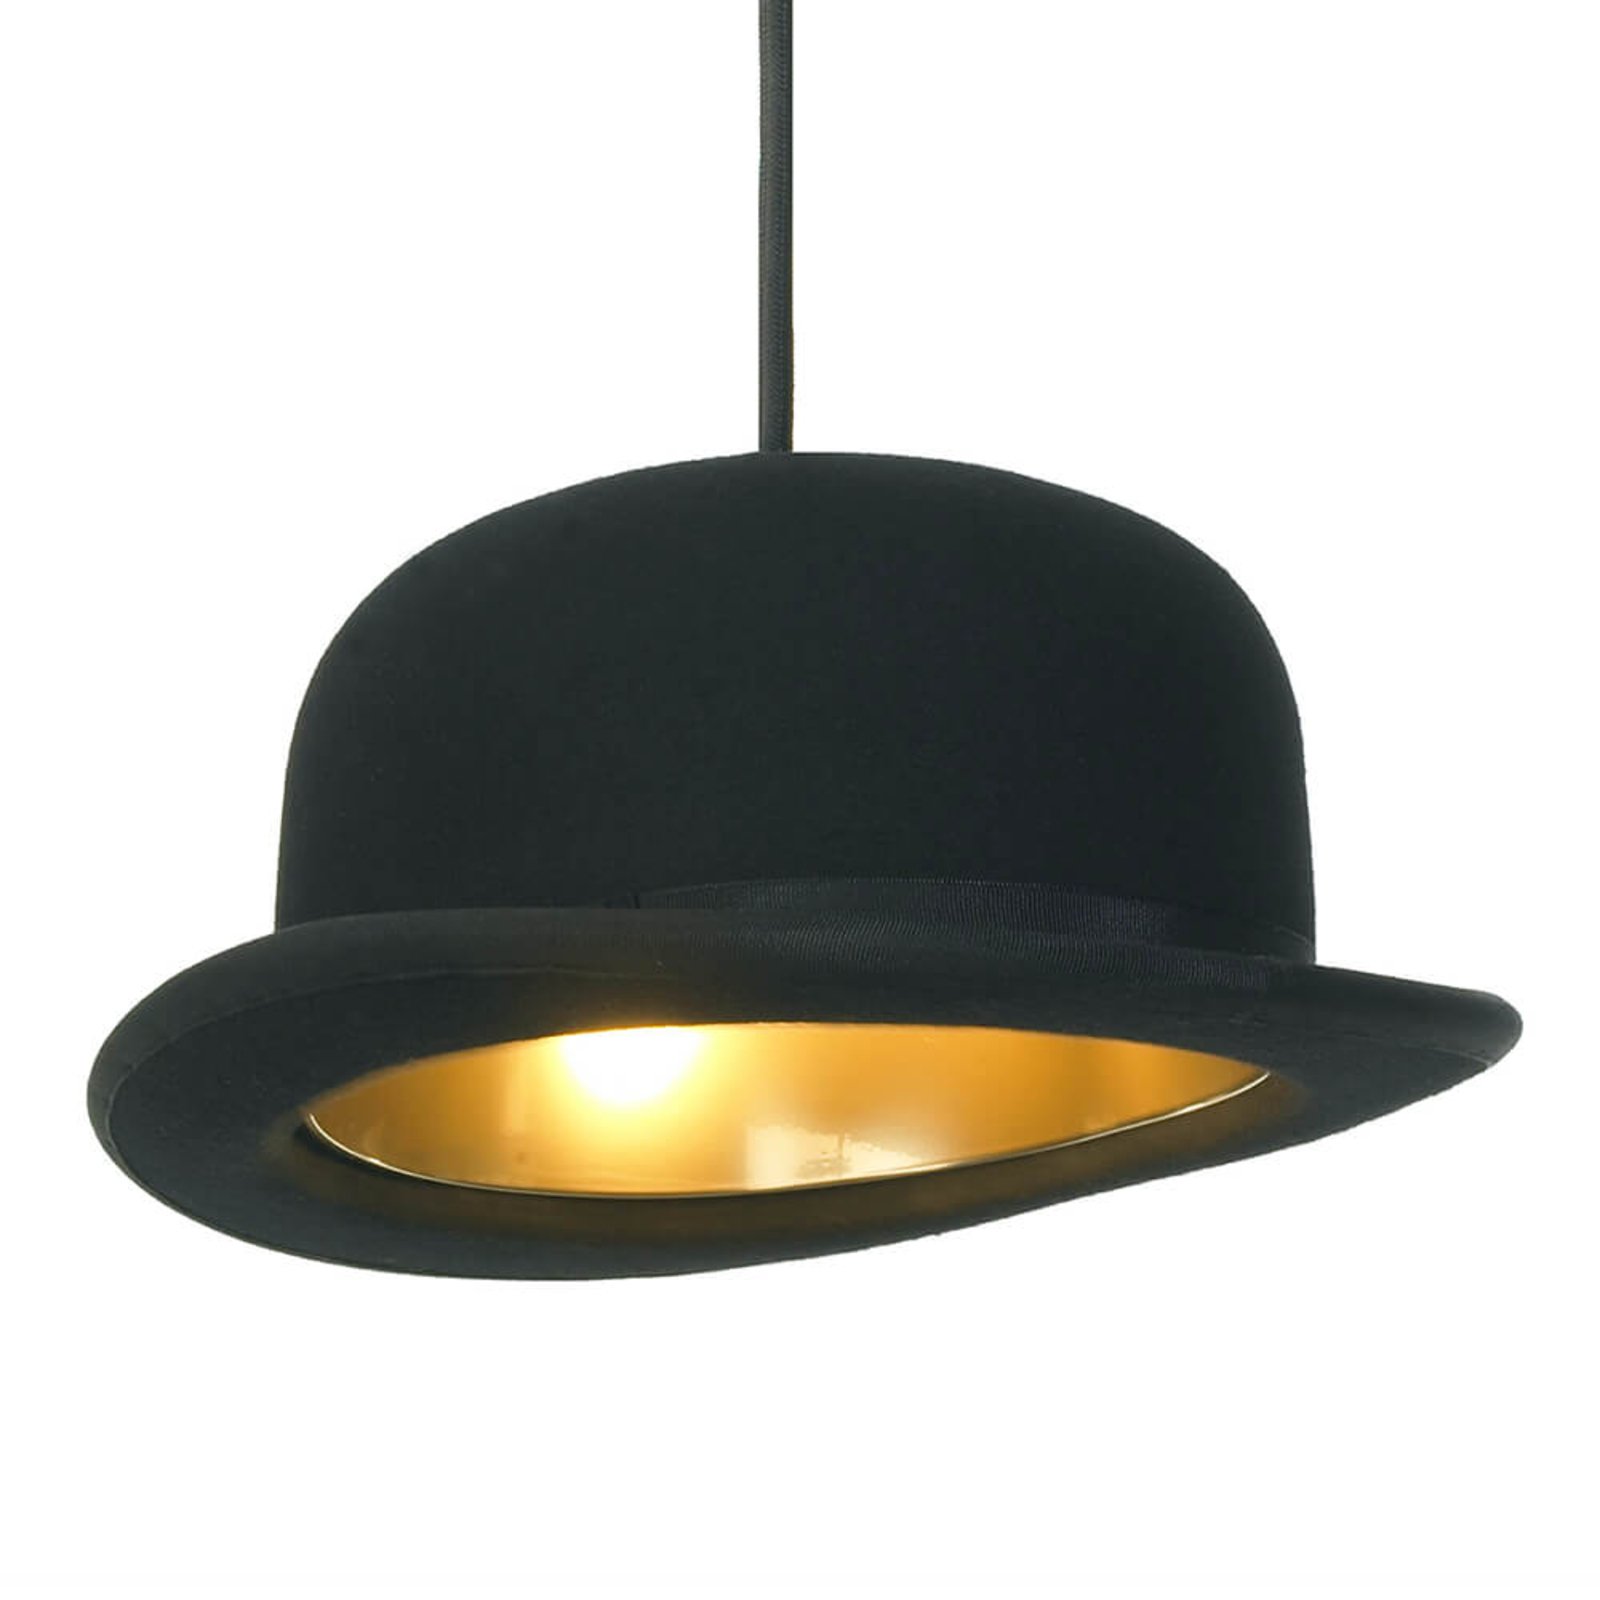 Fantasierijk hebzuchtig extract Innermost Jeeves - design-hanglamp in hoedvorm | Lampen24.be